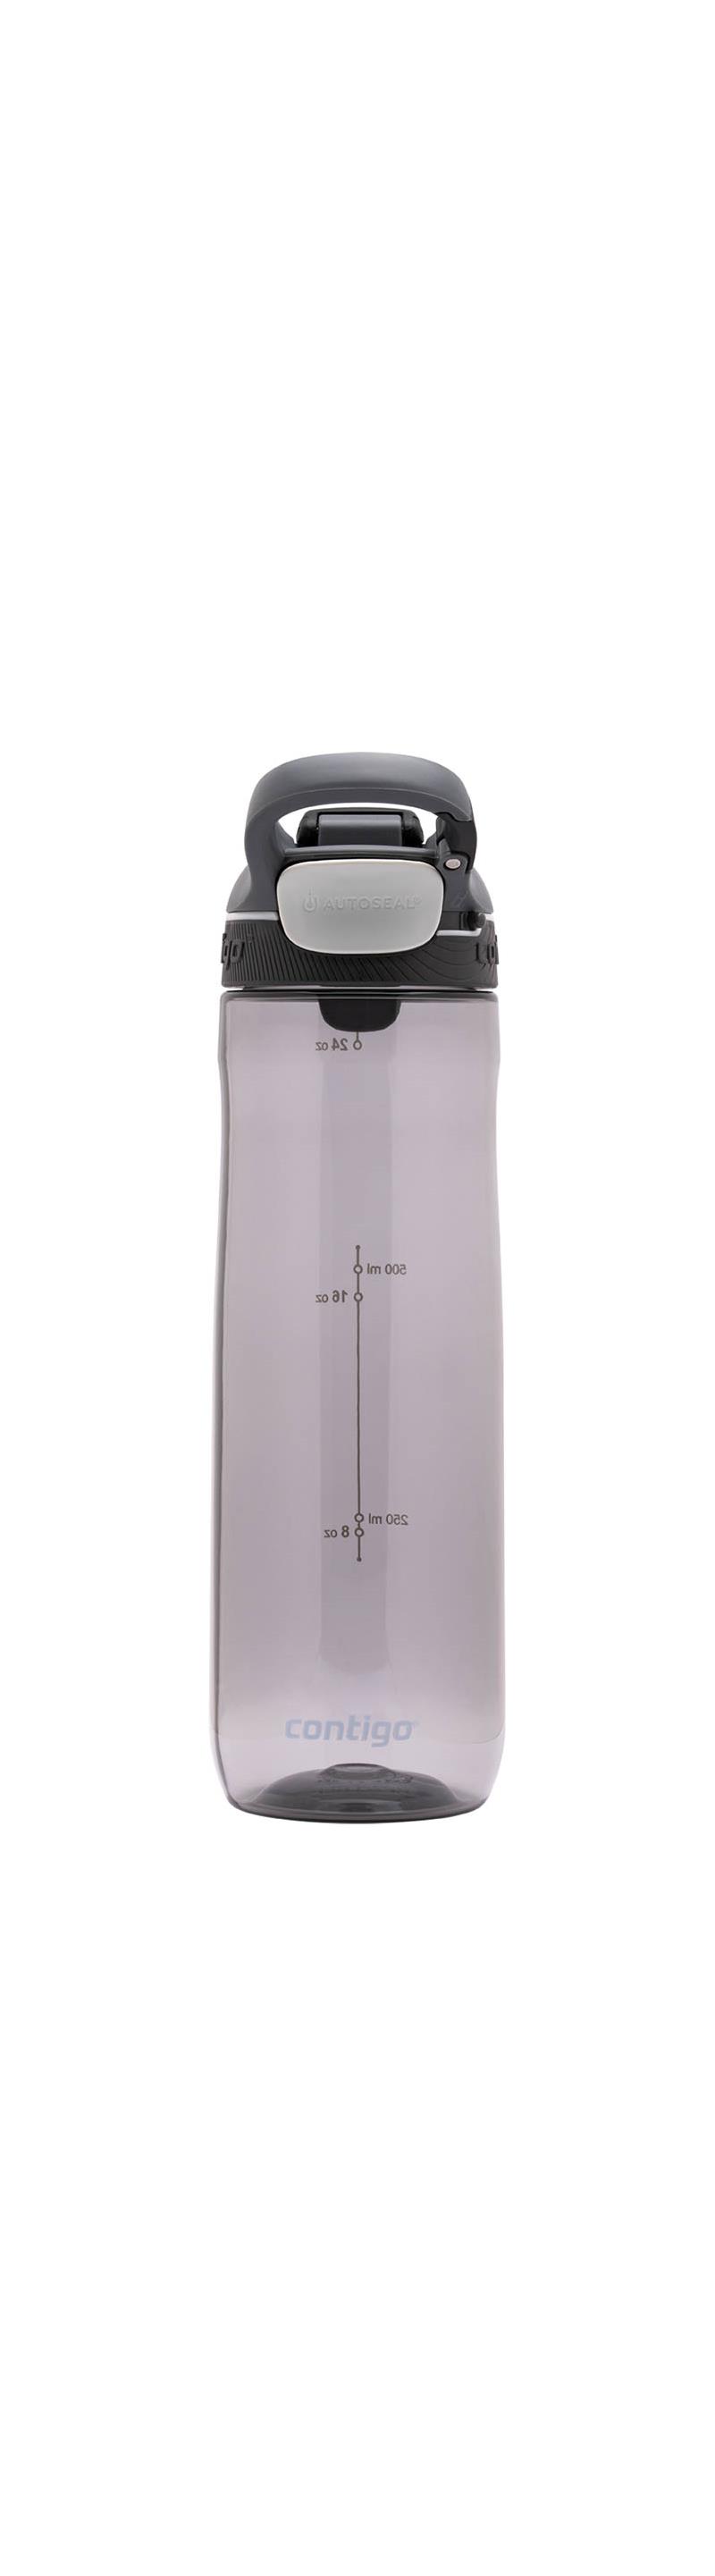 Contigo Autoseal Cortland Water Bottle-2